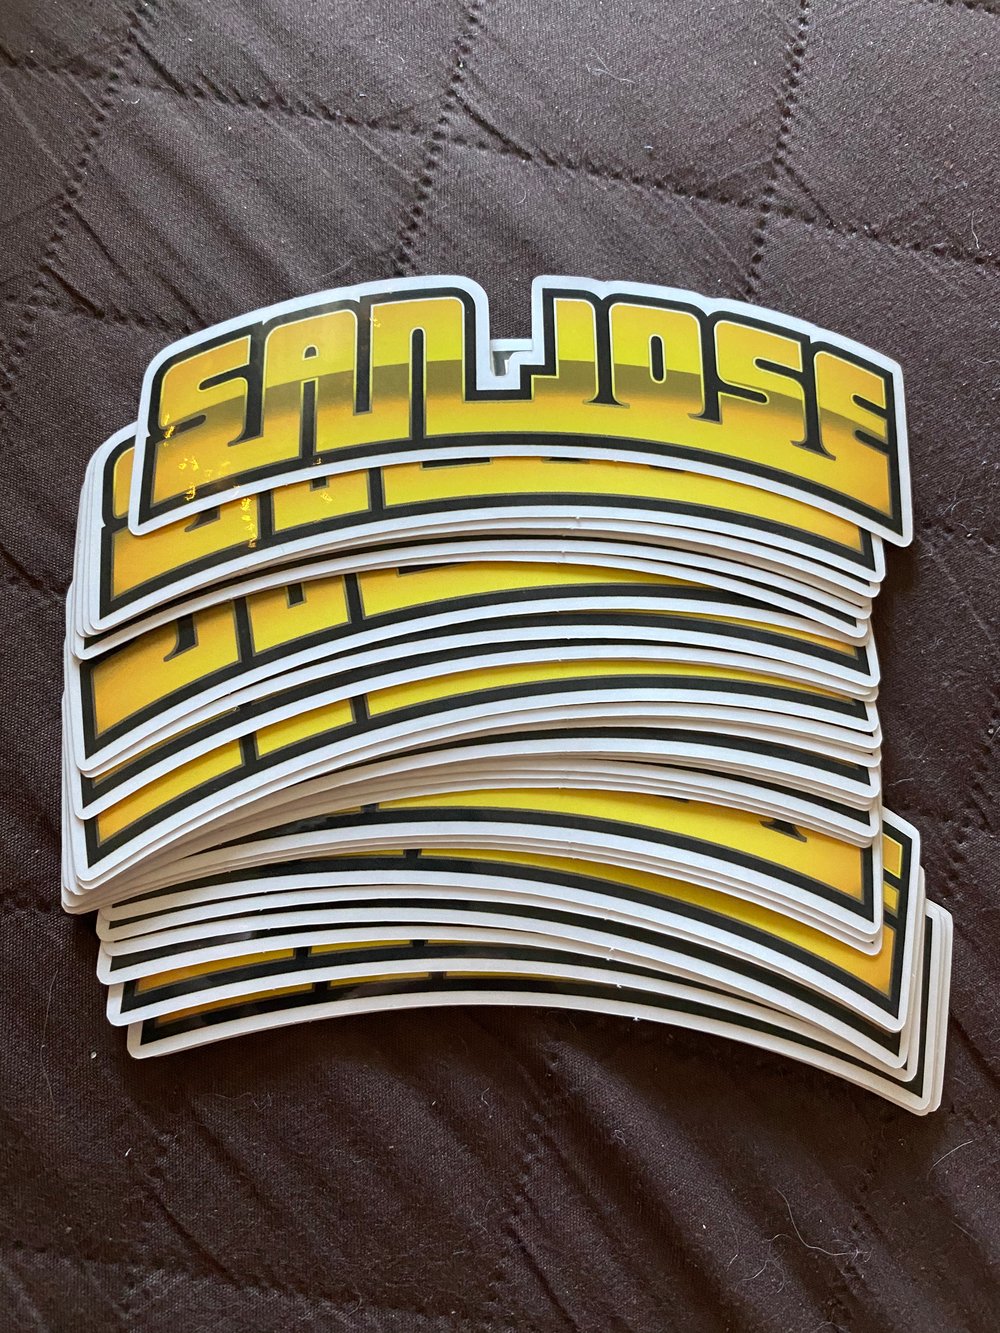 Image of San Jose lowrider stickers